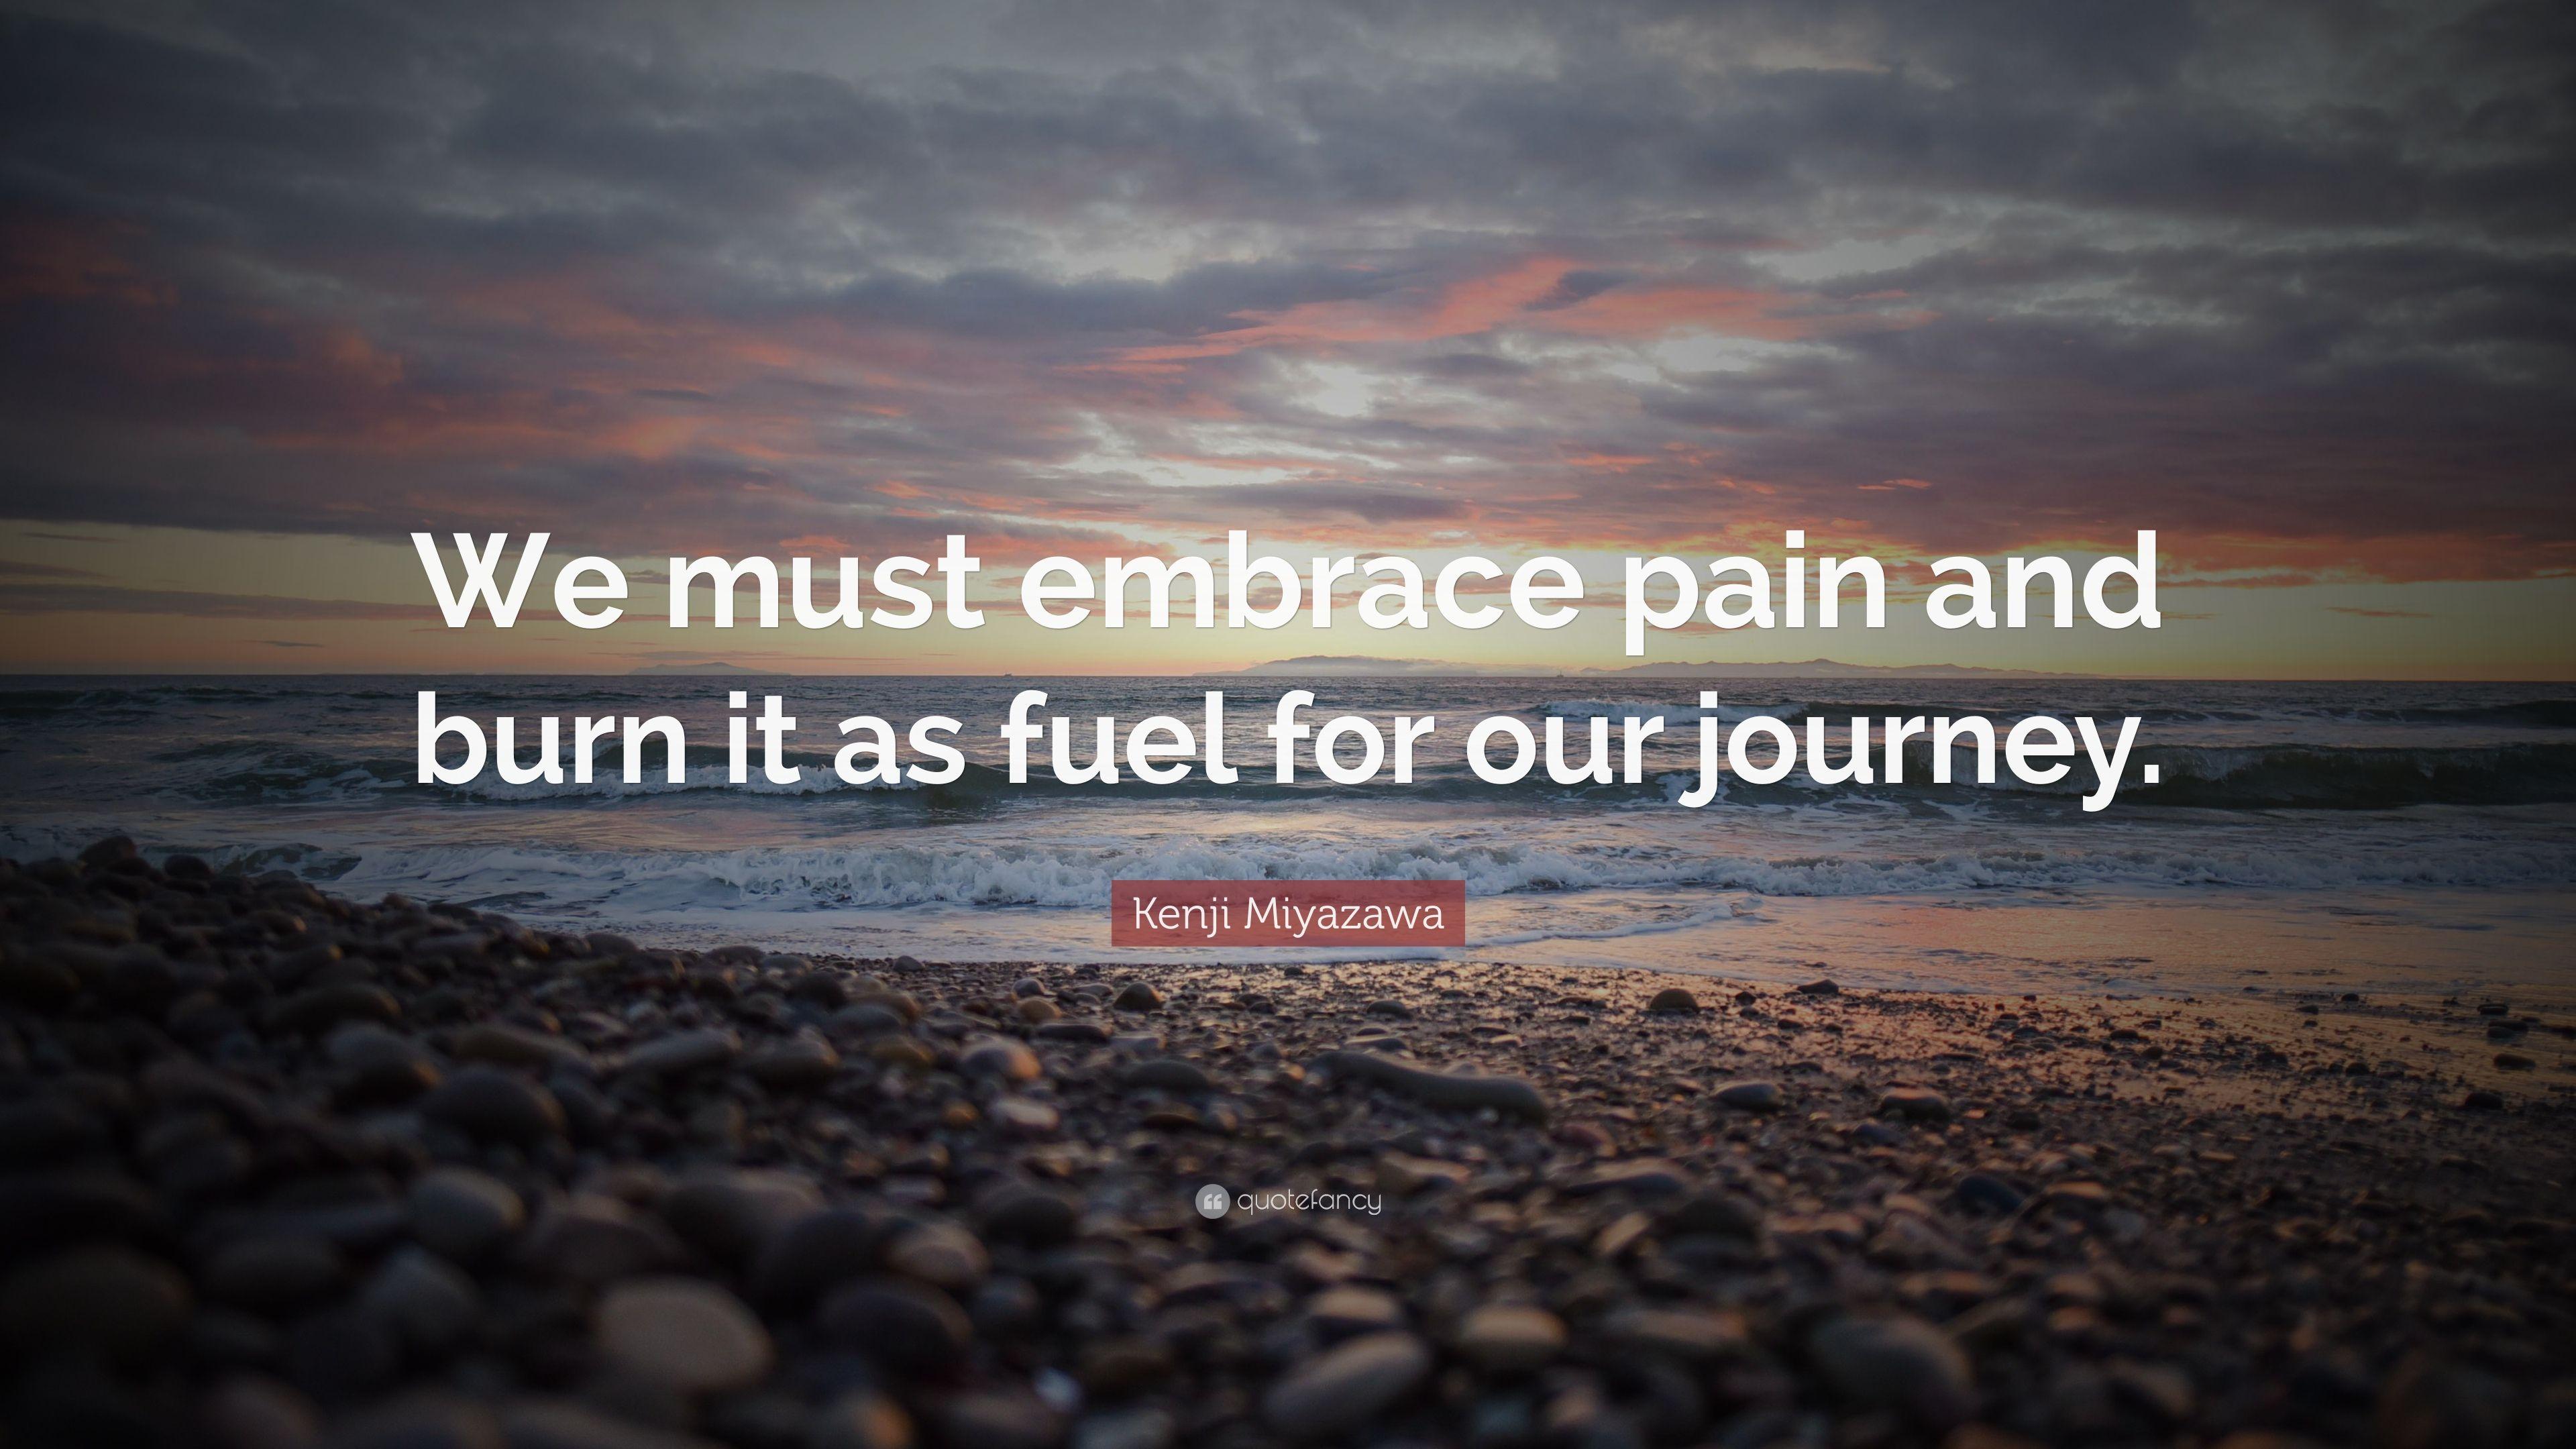 Kenji Miyazawa Quote: “We must embrace pain and burn it as fuel